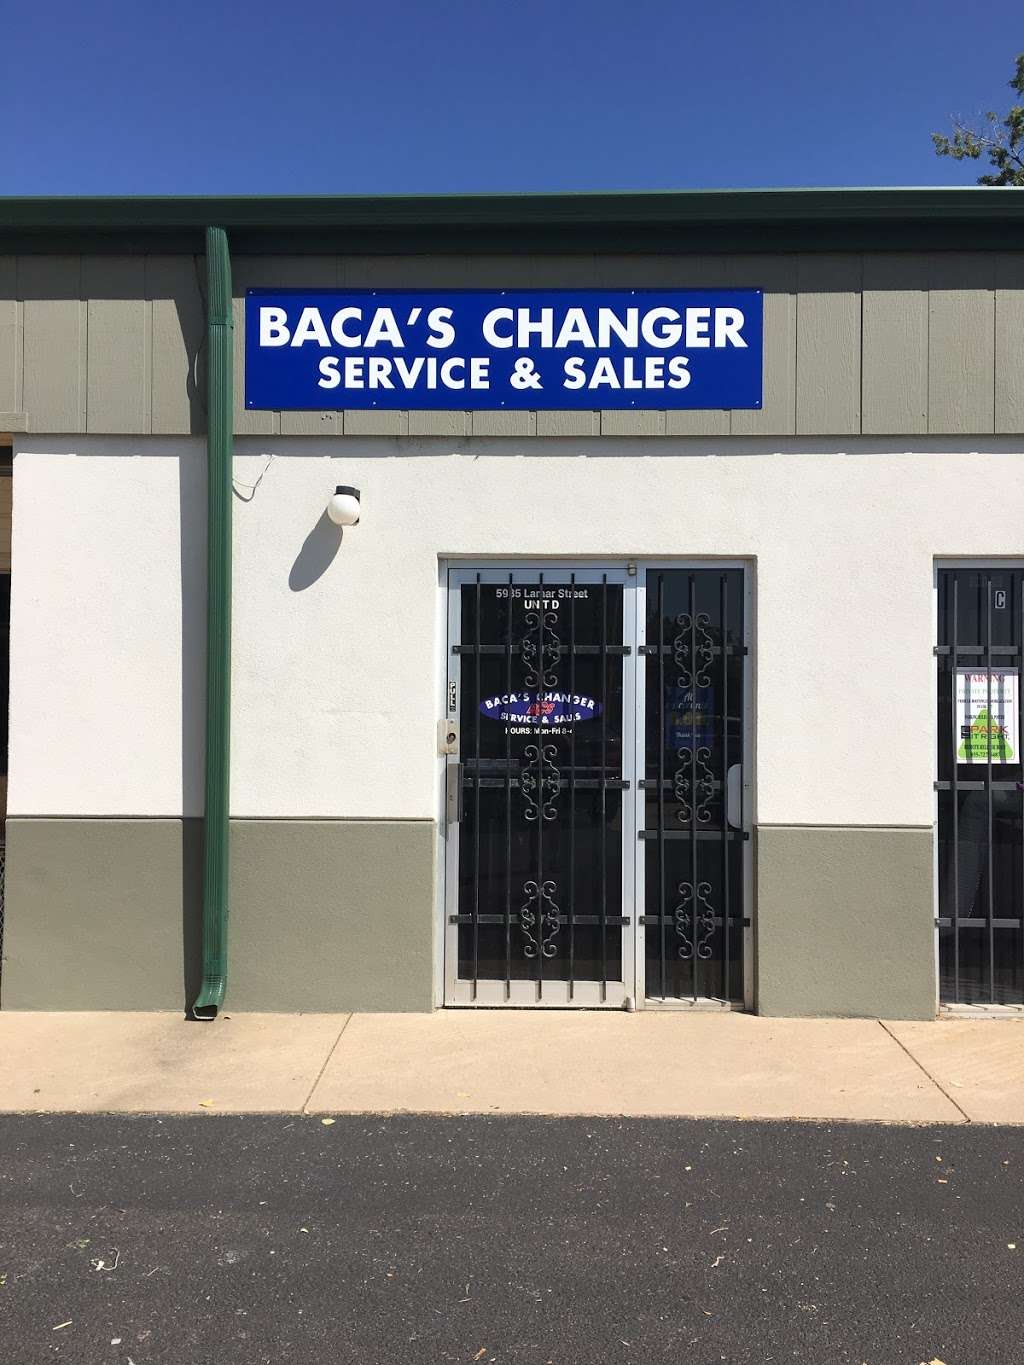 Bacas Changer Service & Sales Inc | 5985 N Lamar St unit d, Arvada, CO 80003 | Phone: (720) 855-8351